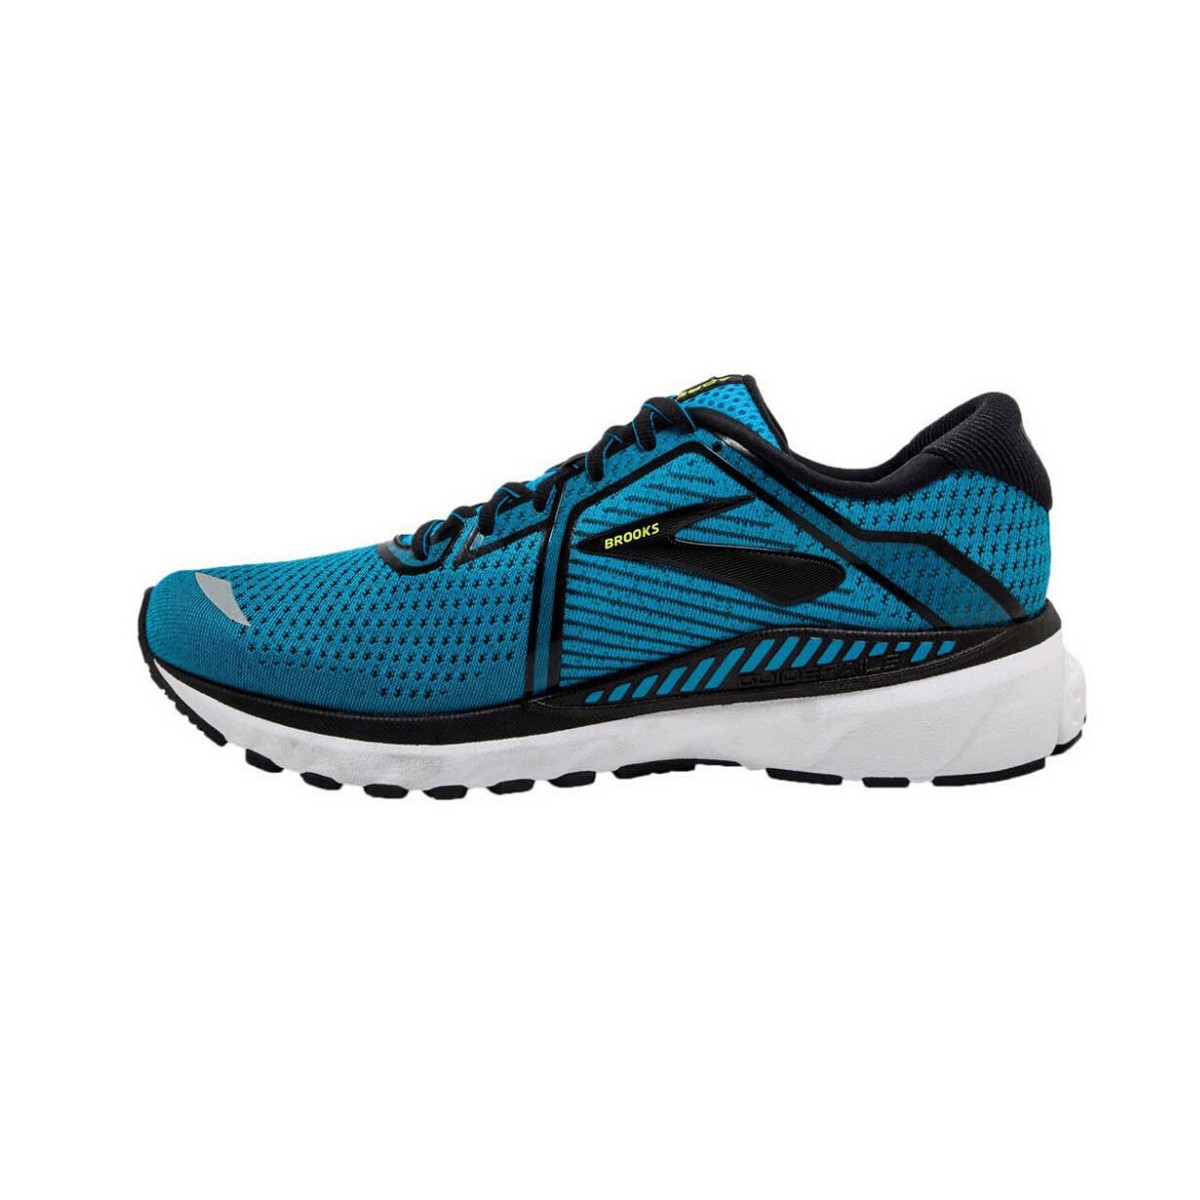 Brooks Adrenaline GTS 20 Blue SS20 Men's Running Shoes